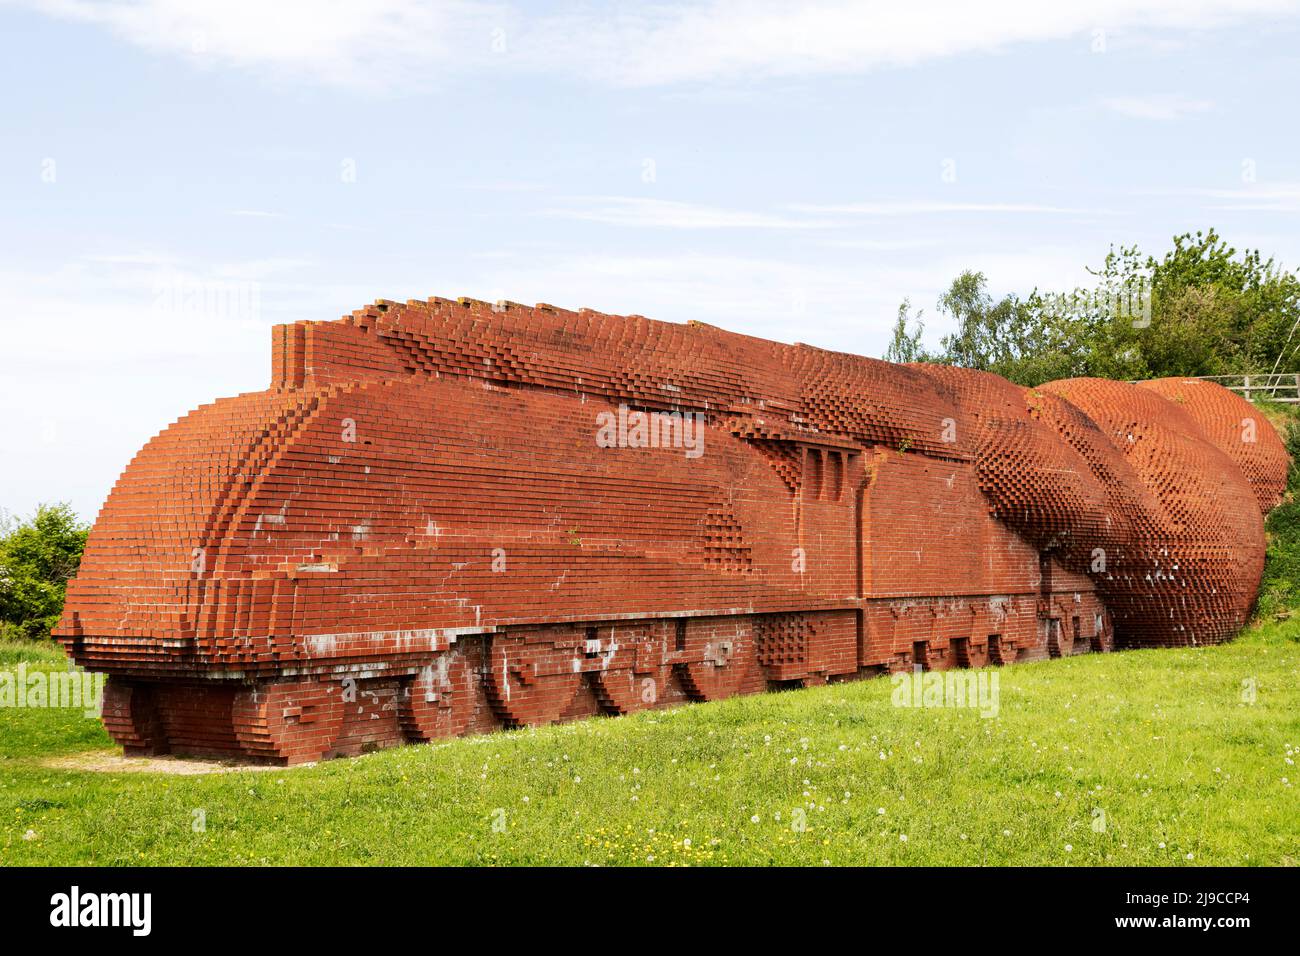 Darlington Brick train à Darlington, comté de Durham, Angleterre. La sculpture en briques, représentant une locomotive de Mallard rapide, a été créée par David M. Banque D'Images